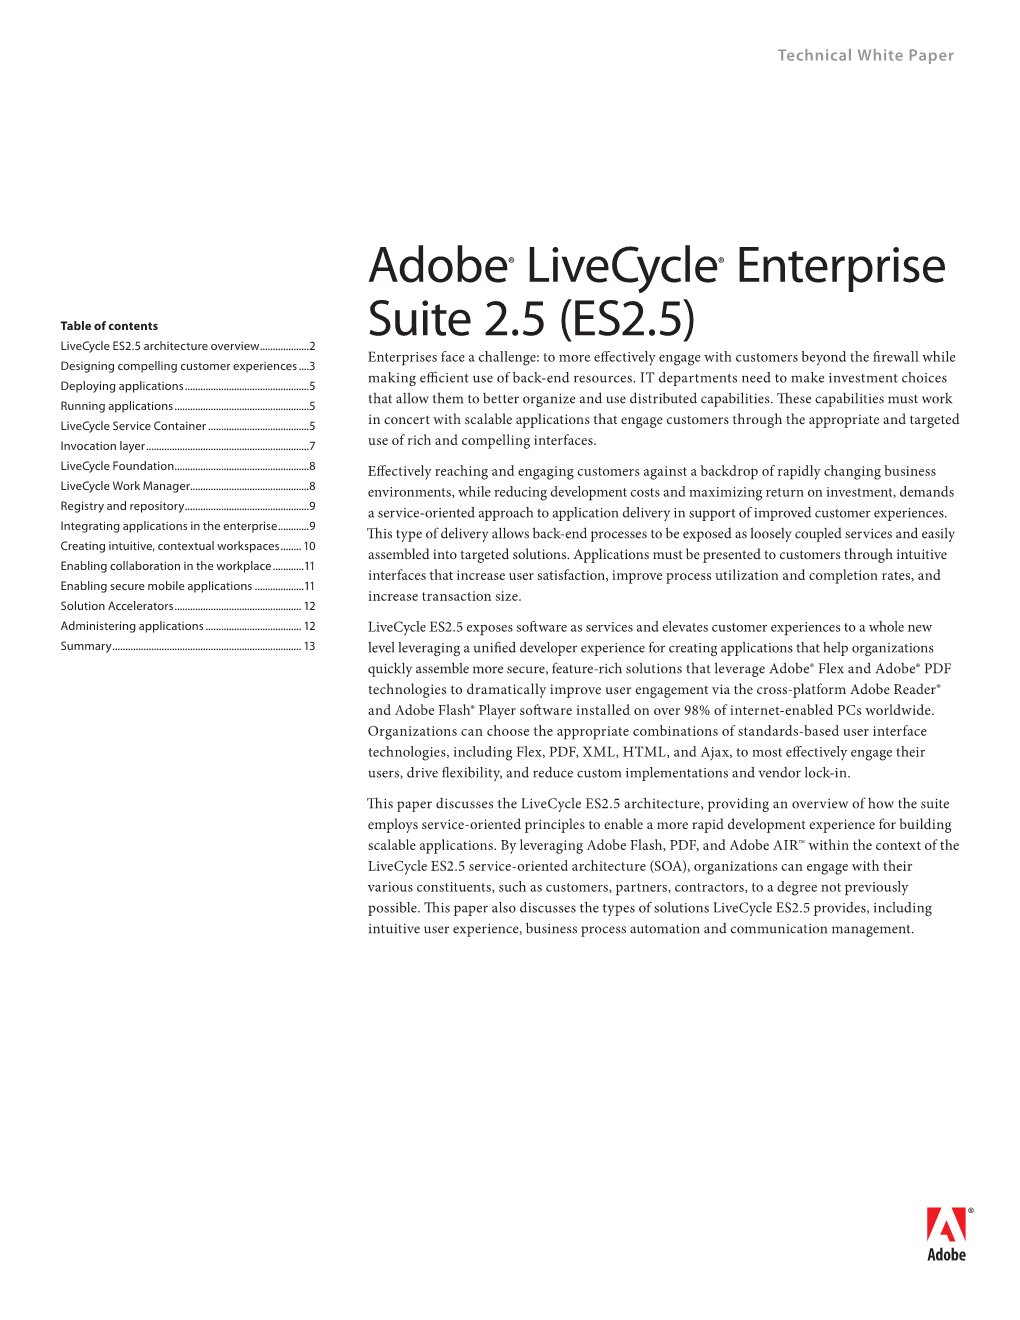 Adobe® Livecycle® Enterprise Suite 2.5 (ES2.5)